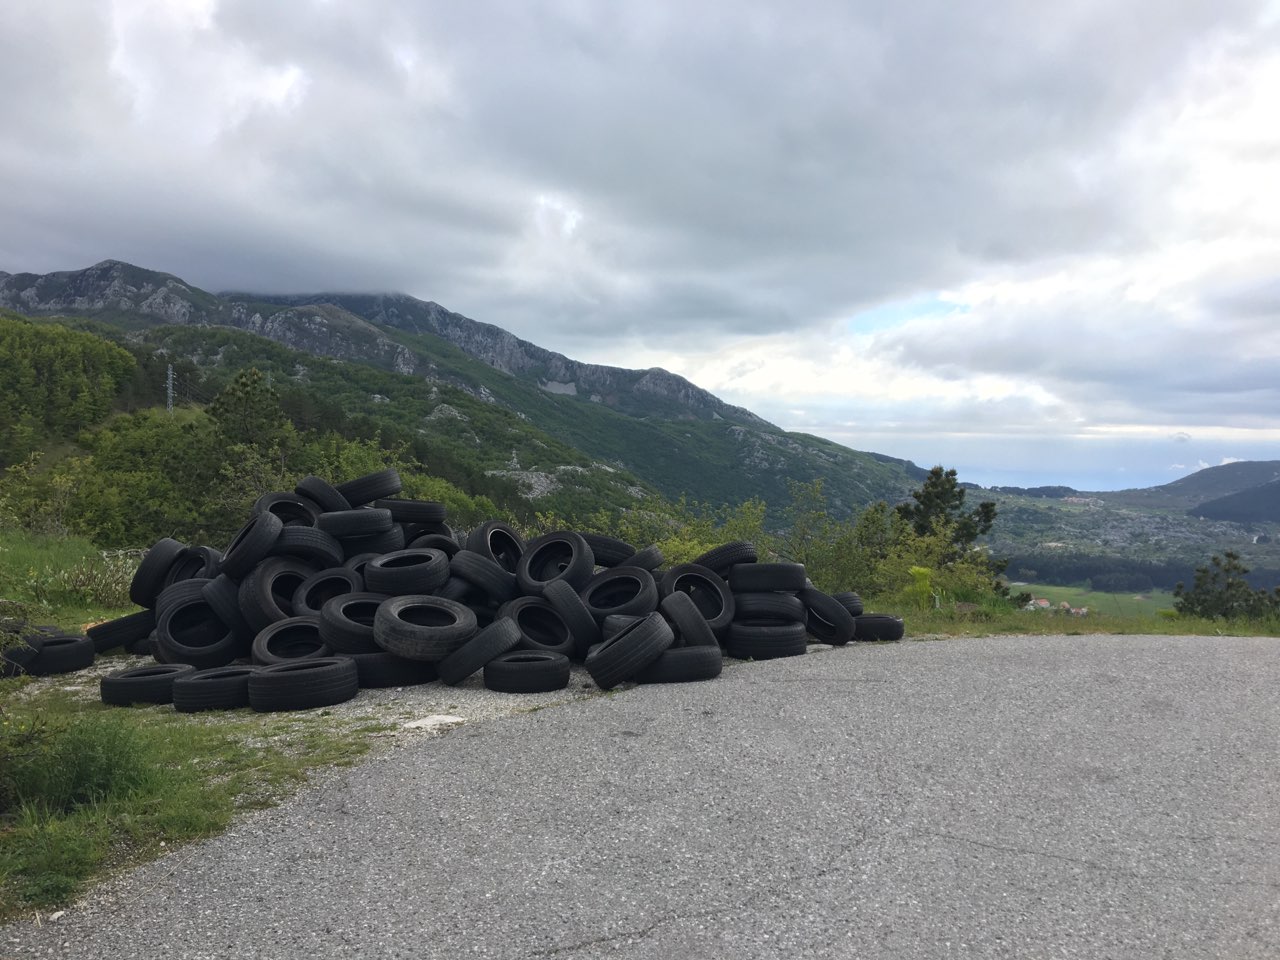 Prijava zbog odlaganja guma na Bukovici